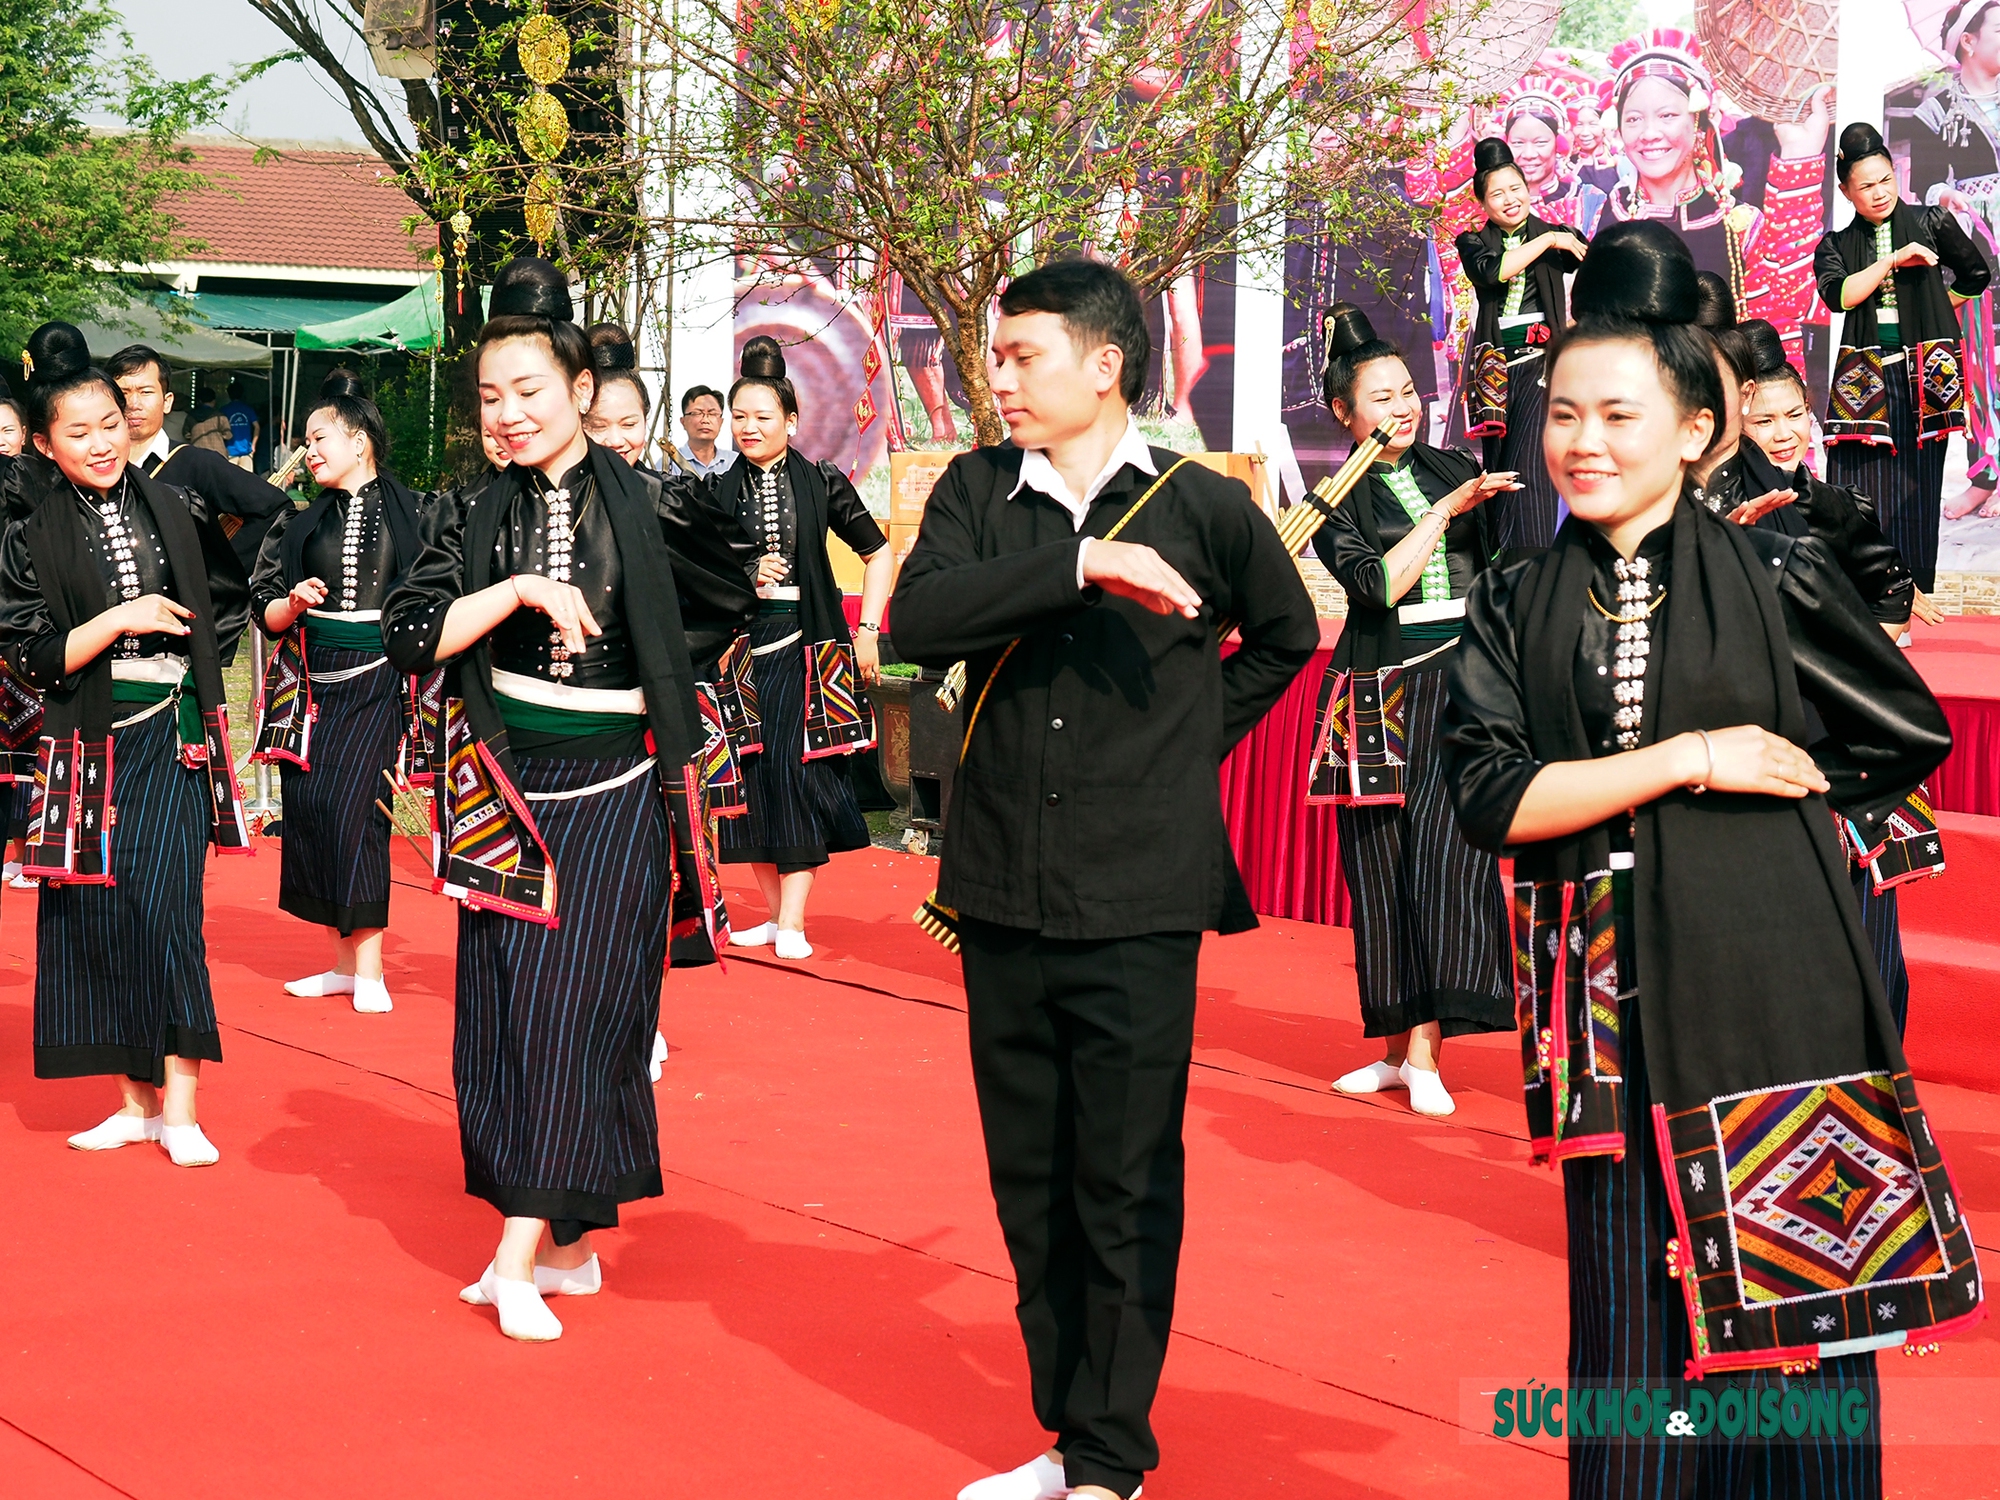 Mê mẩn điệu múa xòe Thái của các cô gái đến từ tỉnh Sơn La - Ảnh 10.